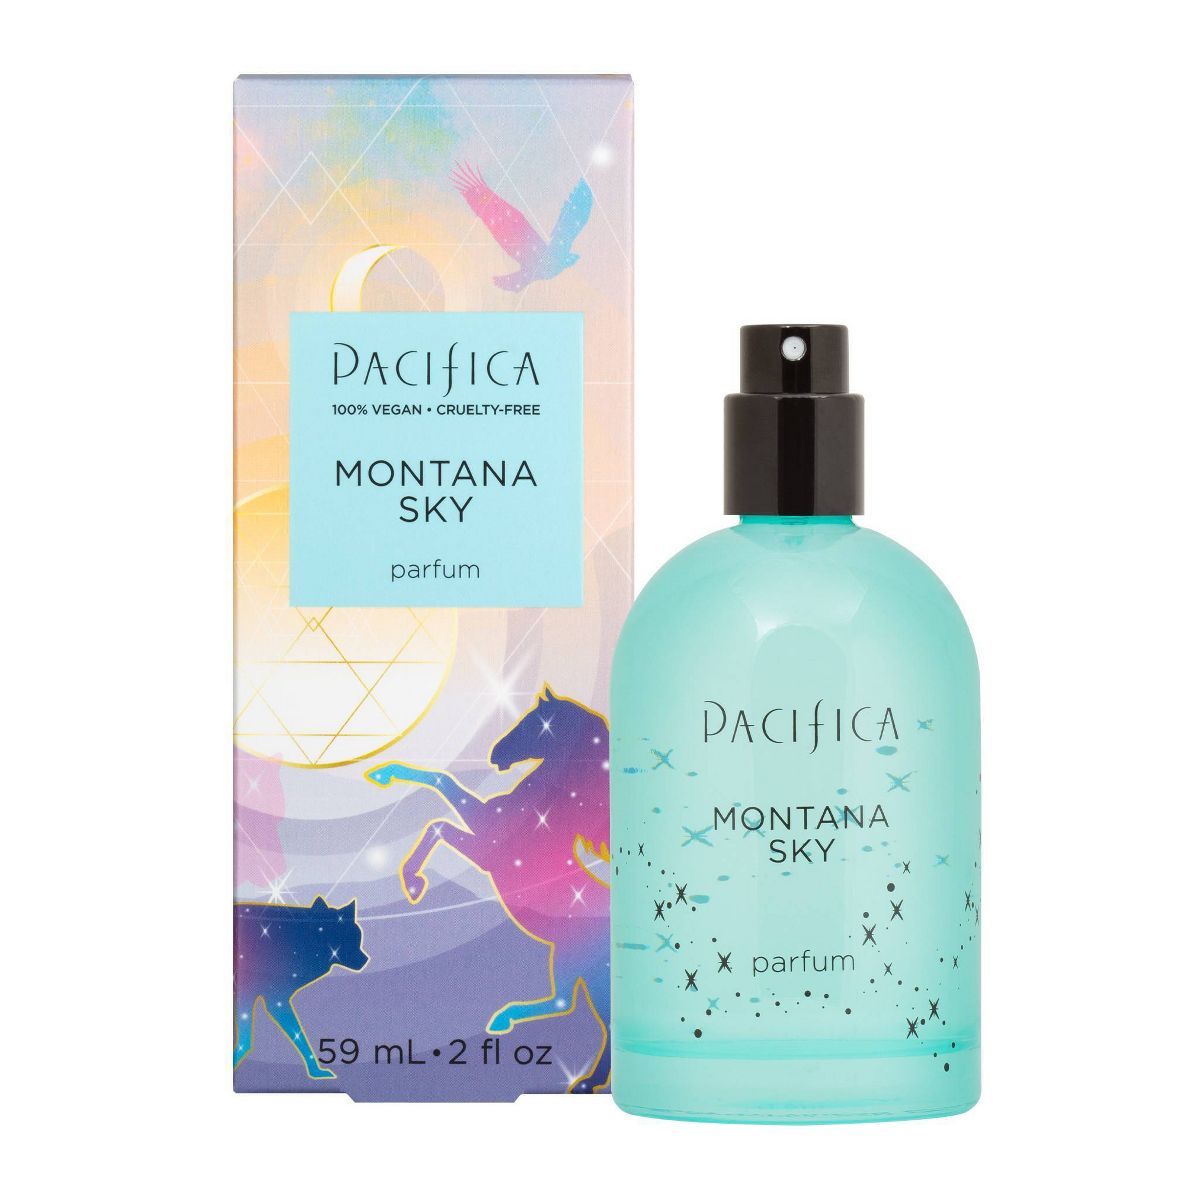 Pacifica Montana Sky Spray Perfume - 2 fl oz | Target